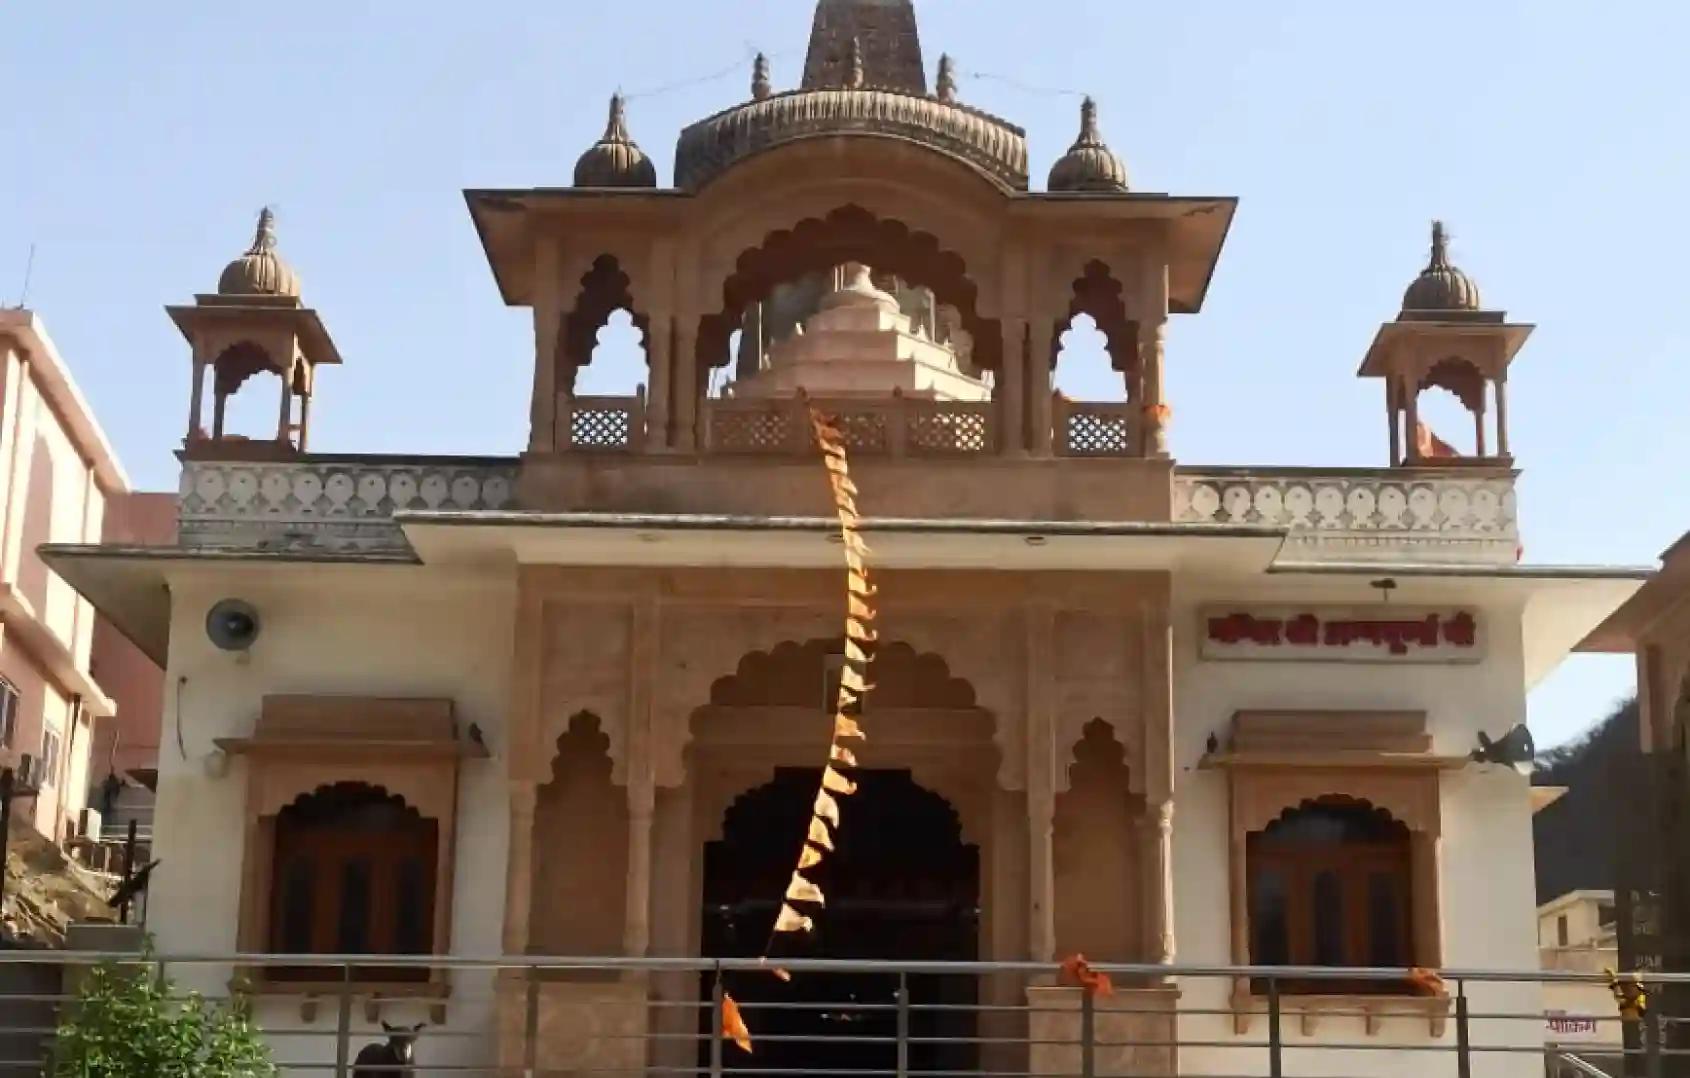 Maa Annapurna Mandir, Khole ke Hanuman Ji,Jaipur, Rajasthan